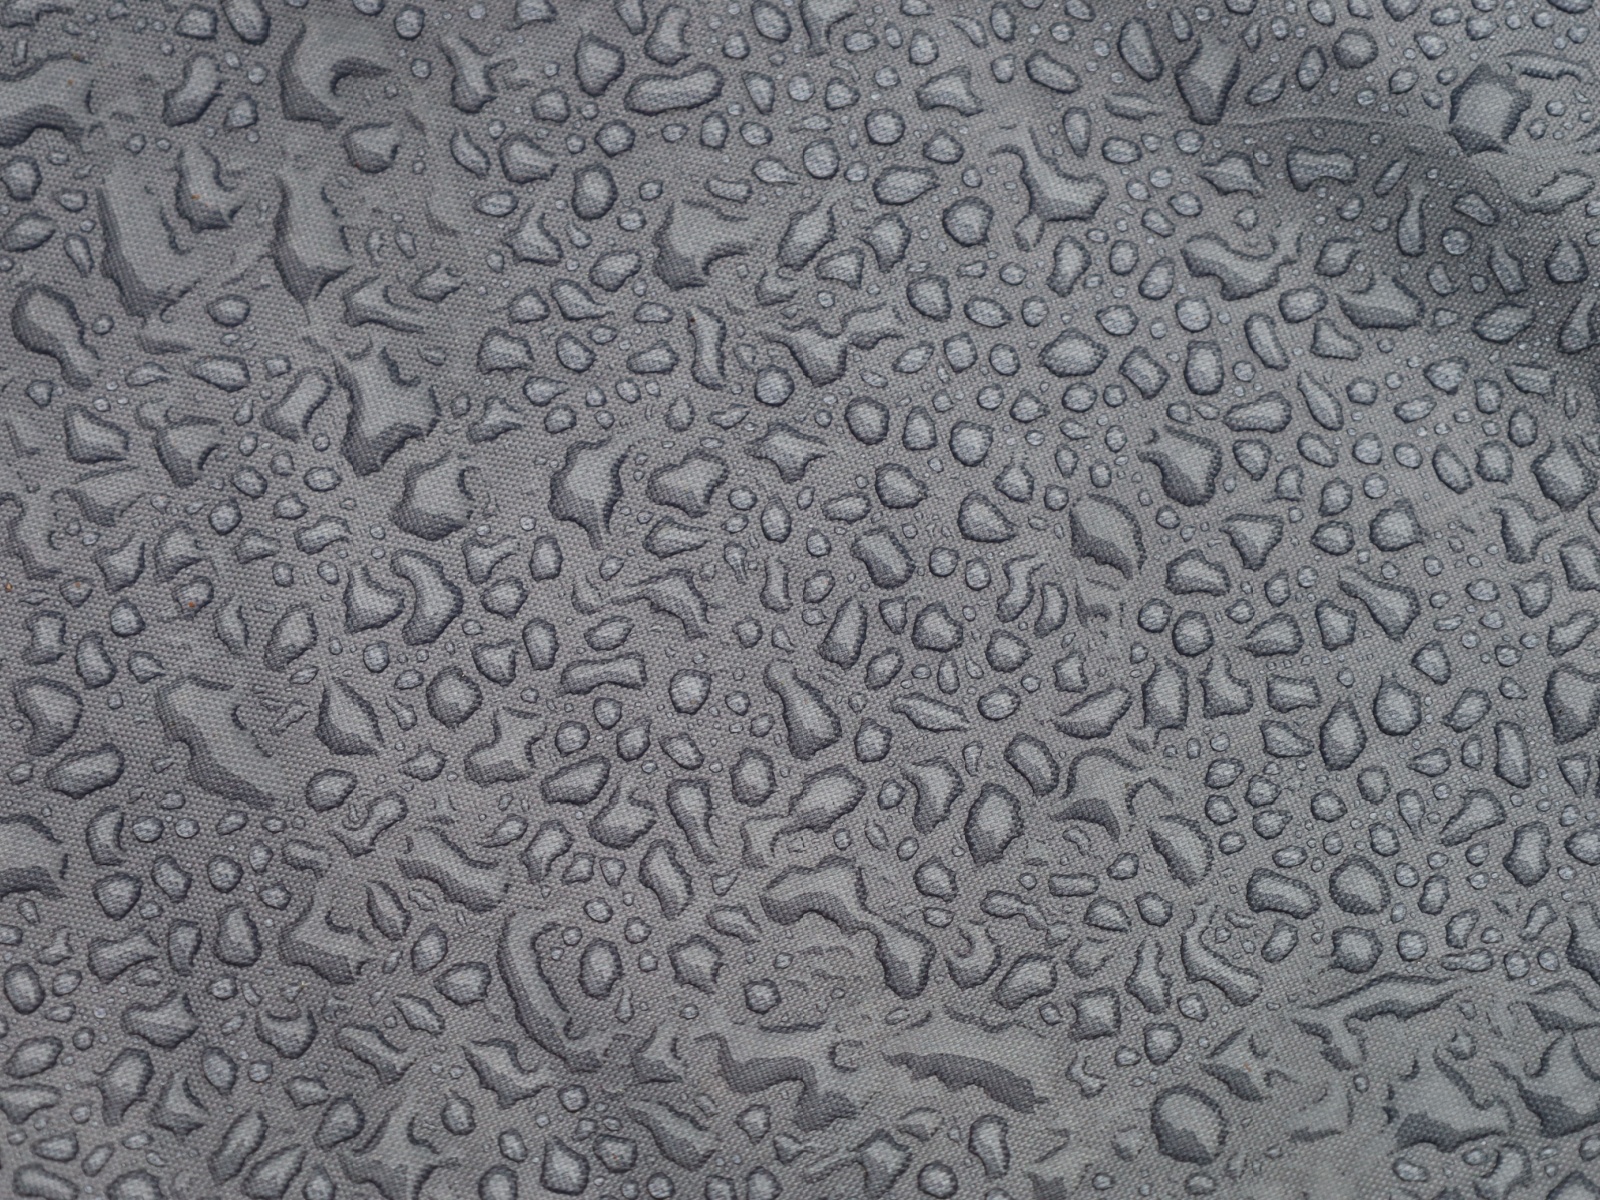 condensation on tarp